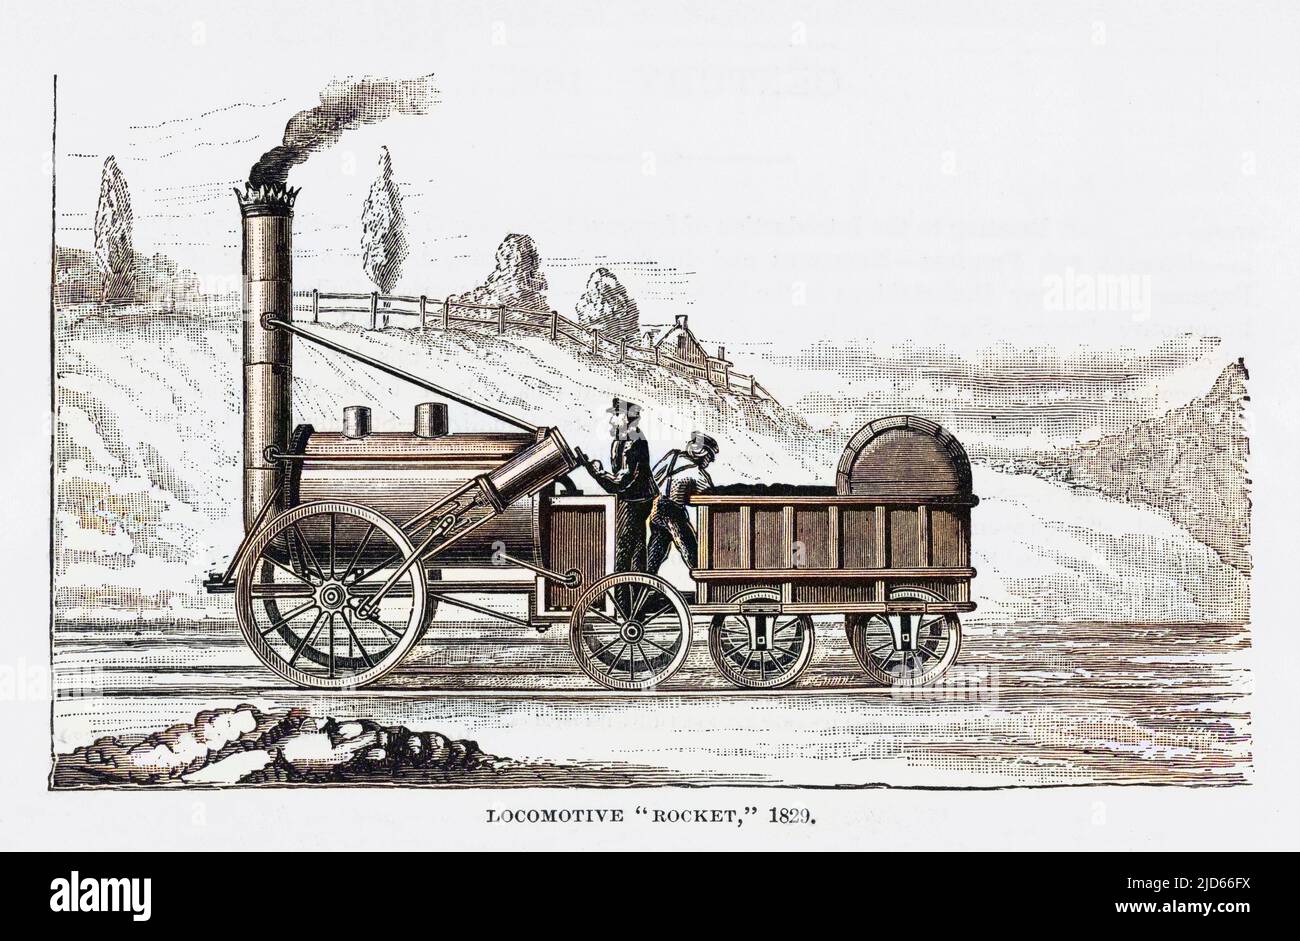 Die Lokomotive von George Stephenson, die Rocket, gewann einen Preis der Liverpool and Manchester Railway Company. Kolorierte Version von : 10007164 Datum: 1829 Stockfoto